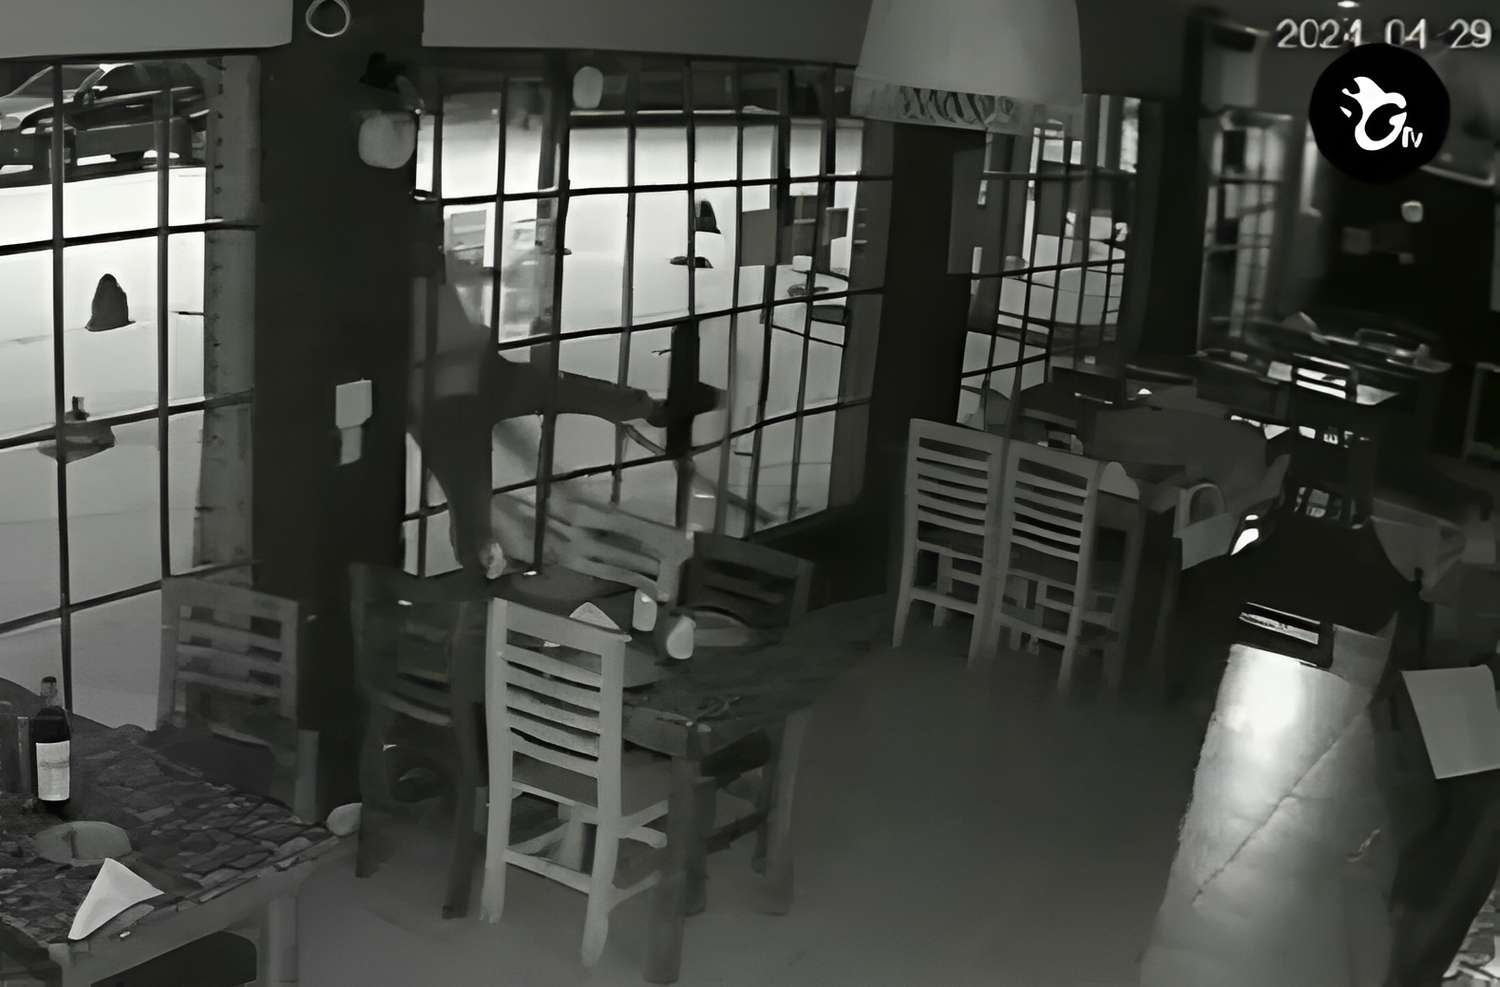 [VIDEO] Así entraron a robar al restaurante Vía Costa